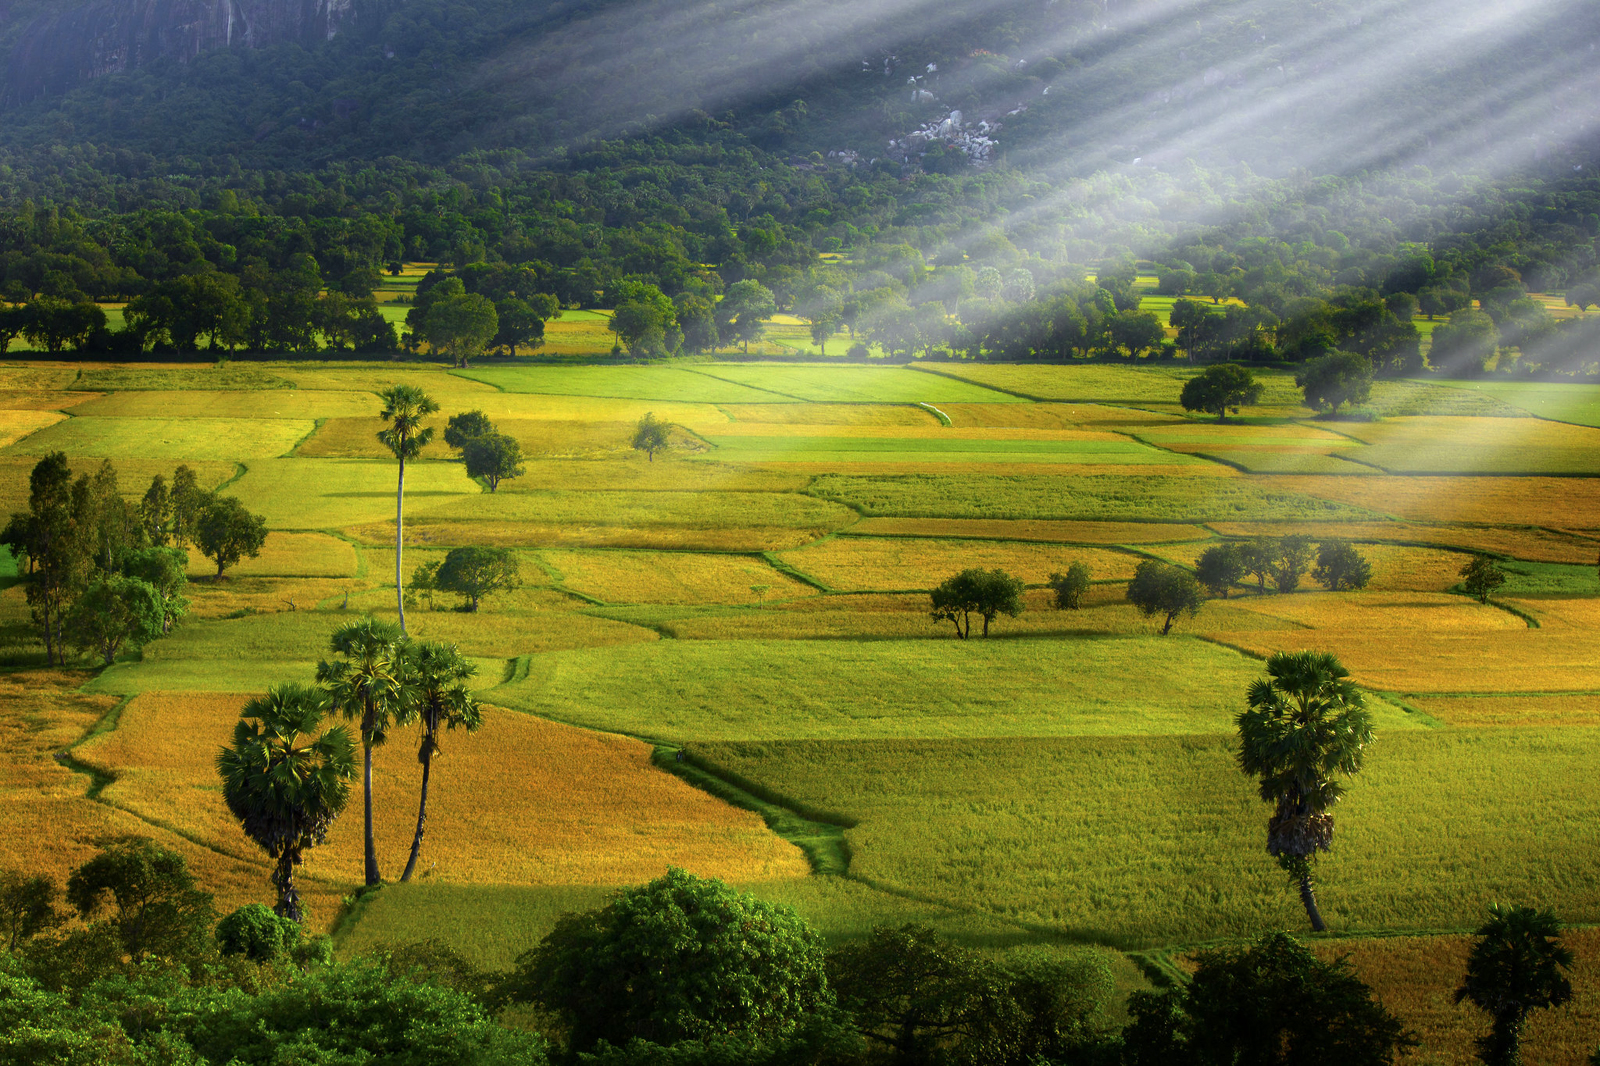 Cánh đồng Tà Pạ là một trong những điểm du lịch hấp dẫn của Việt Nam với vẻ đẹp hoang sơ và trữ tình của những cánh đồng lúa bạt ngàn. Hãy đến và tận hưởng khoảnh khắc tuyệt vời ở đây với những bức ảnh đầy màu sắc.